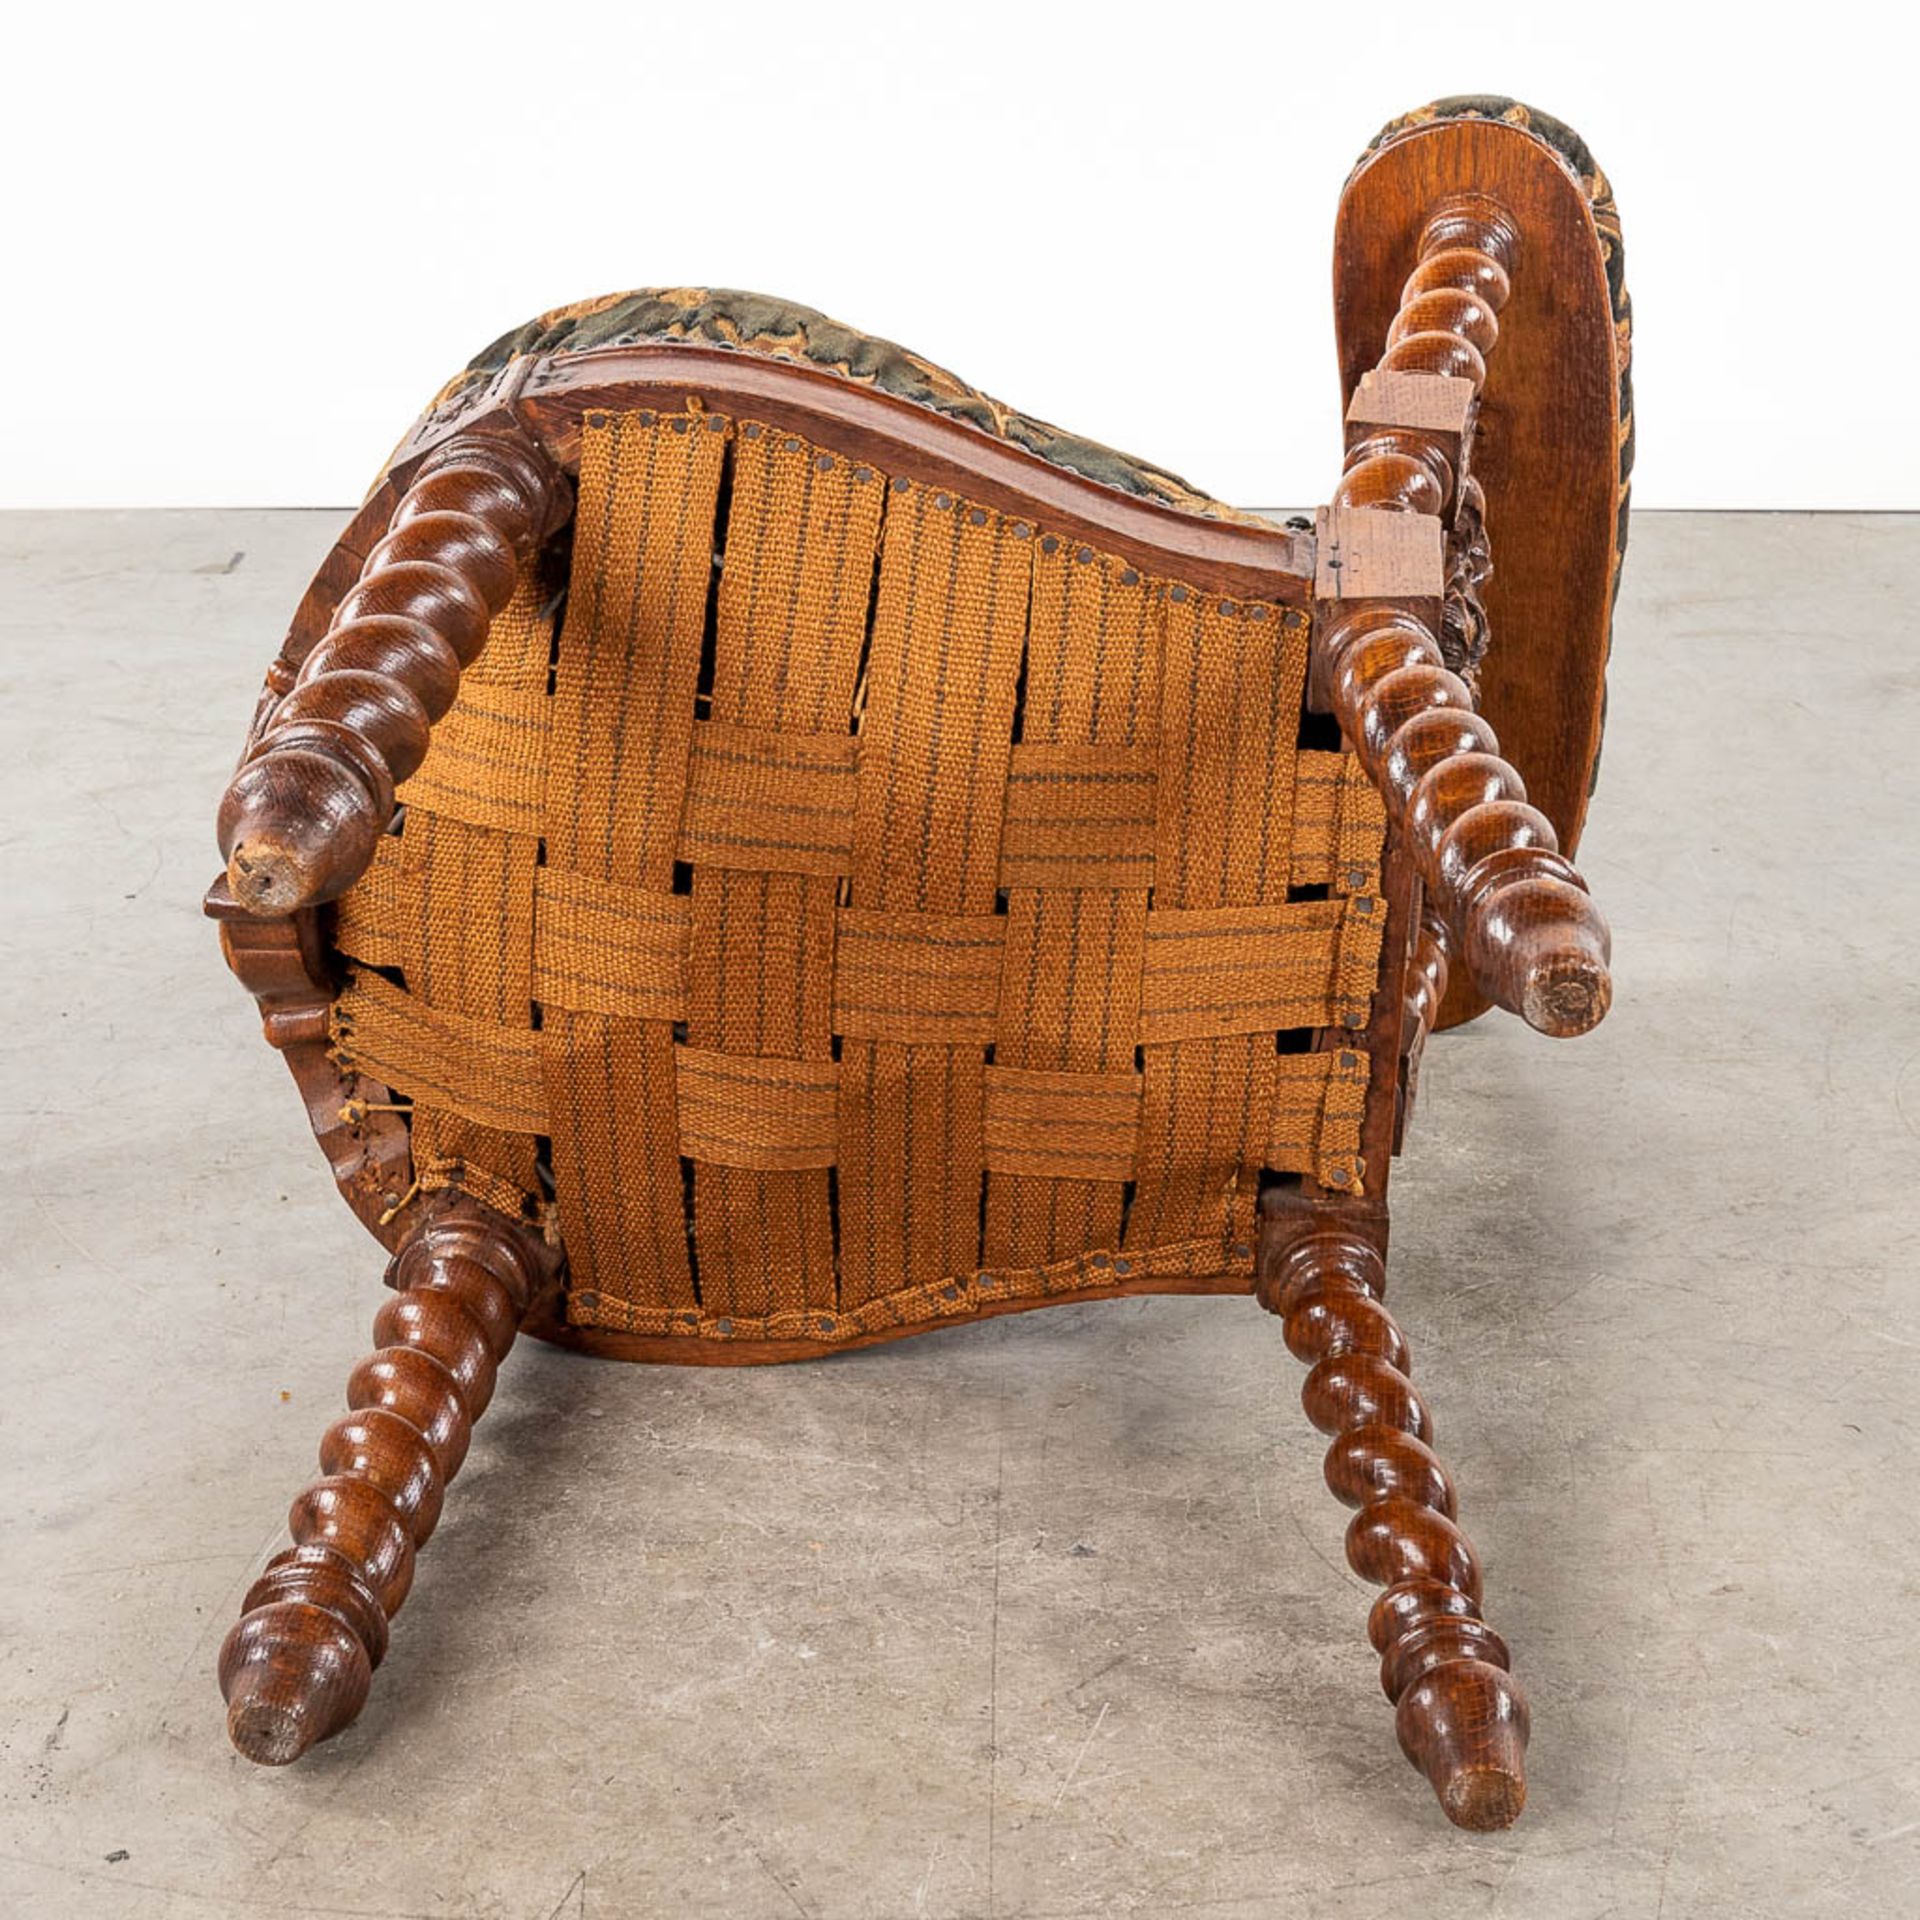 A set of 4 antique wood-sculptured smoker's chairs, oak. Circa 1900. (L:55 x W:44 x H:80 cm) - Bild 10 aus 15